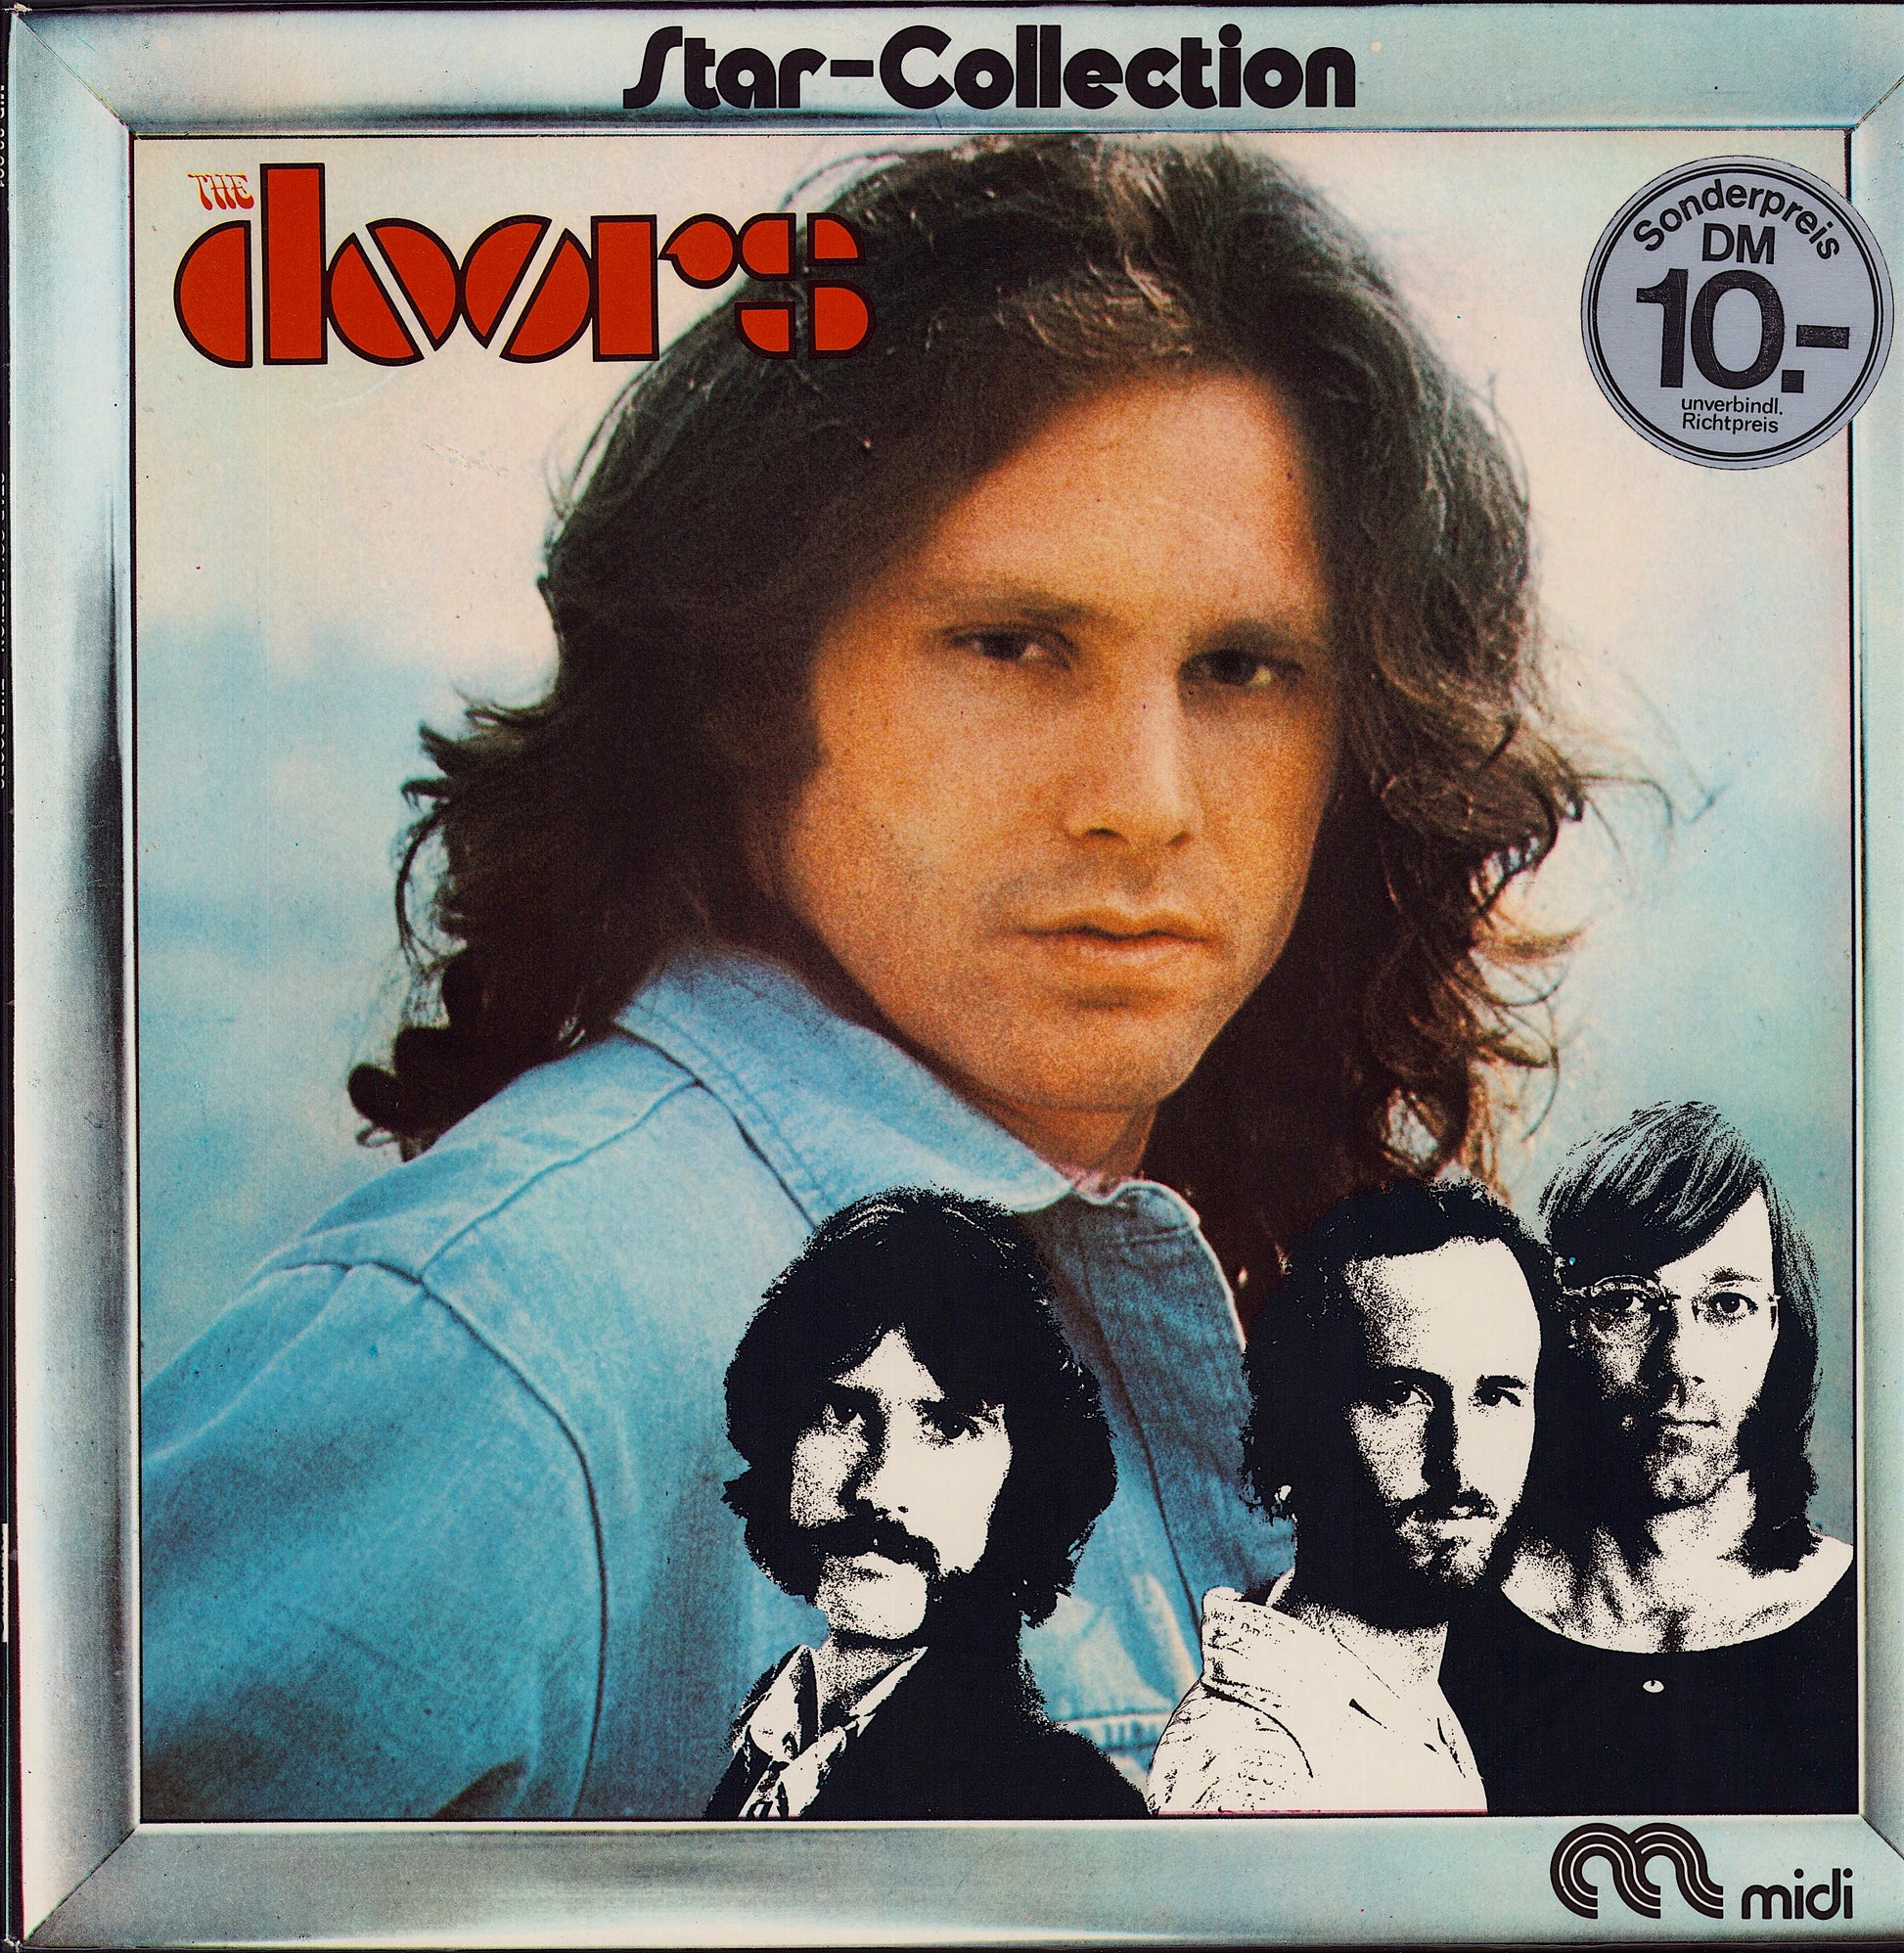 The Doors ‎- Star-Collection Vinyl LP